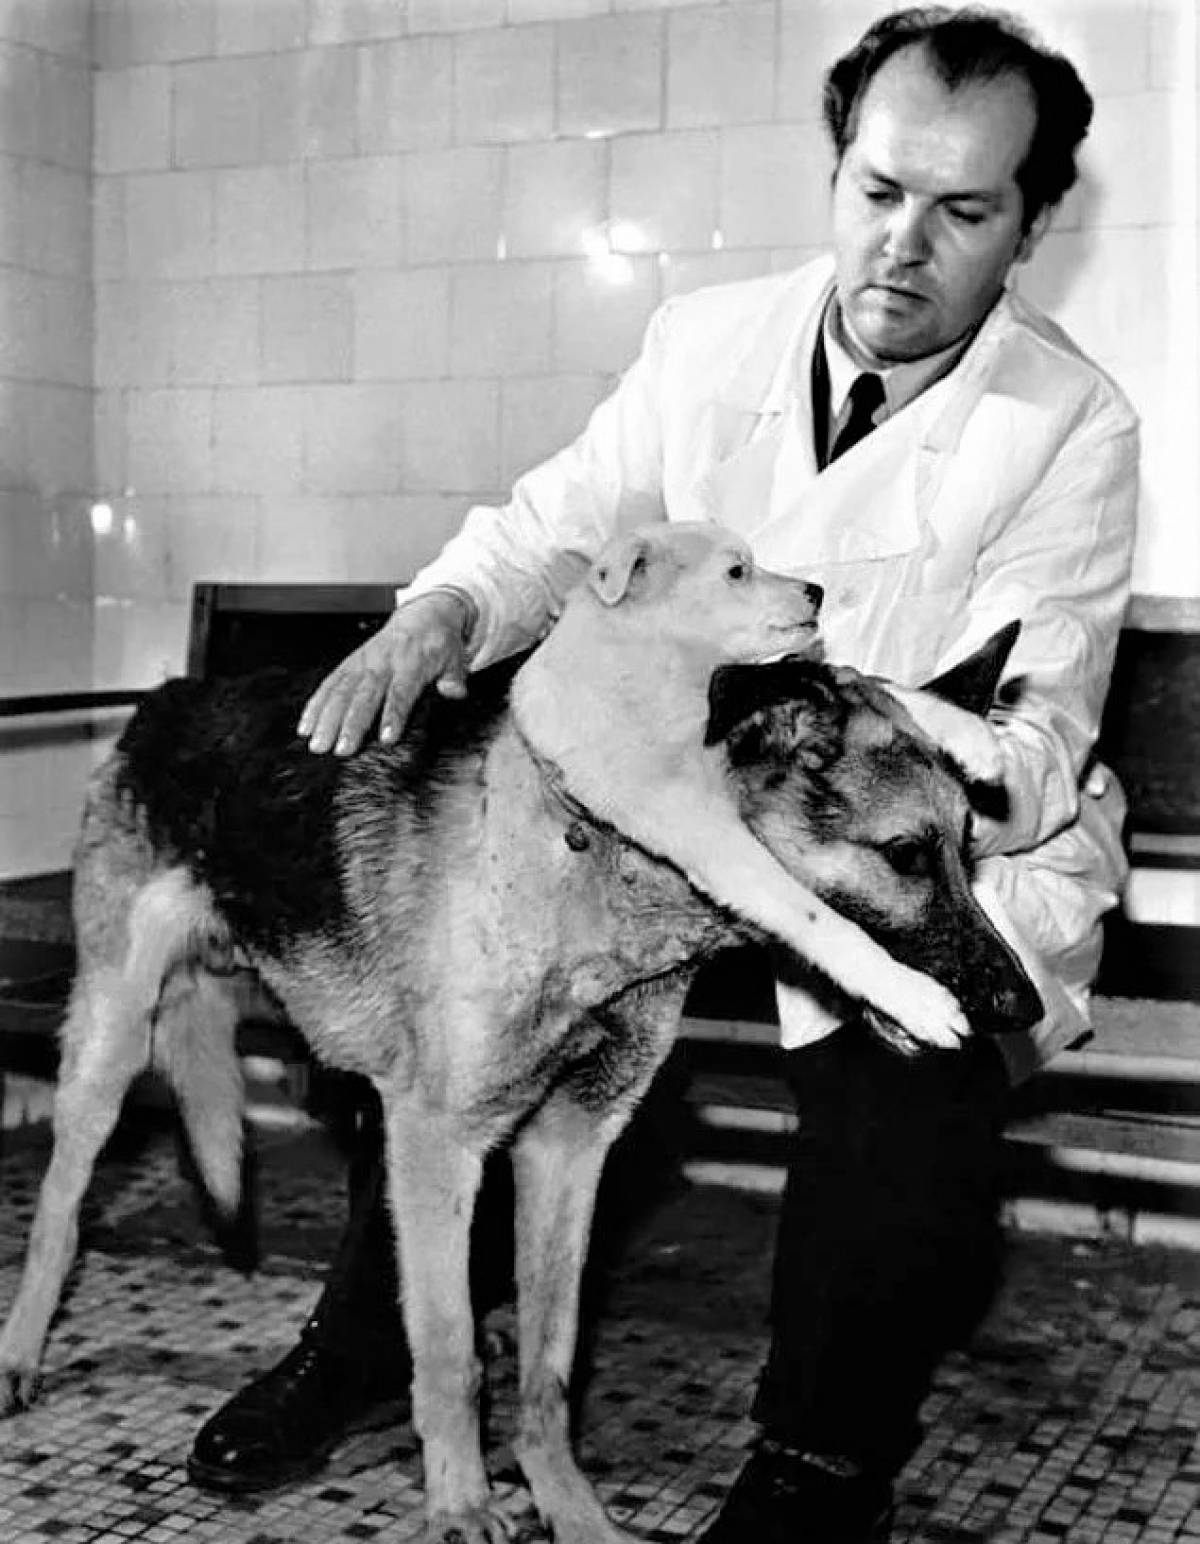 دکتر ولادیمیر دمیخوف با سگ دو سرش / Vladimir Demikhov